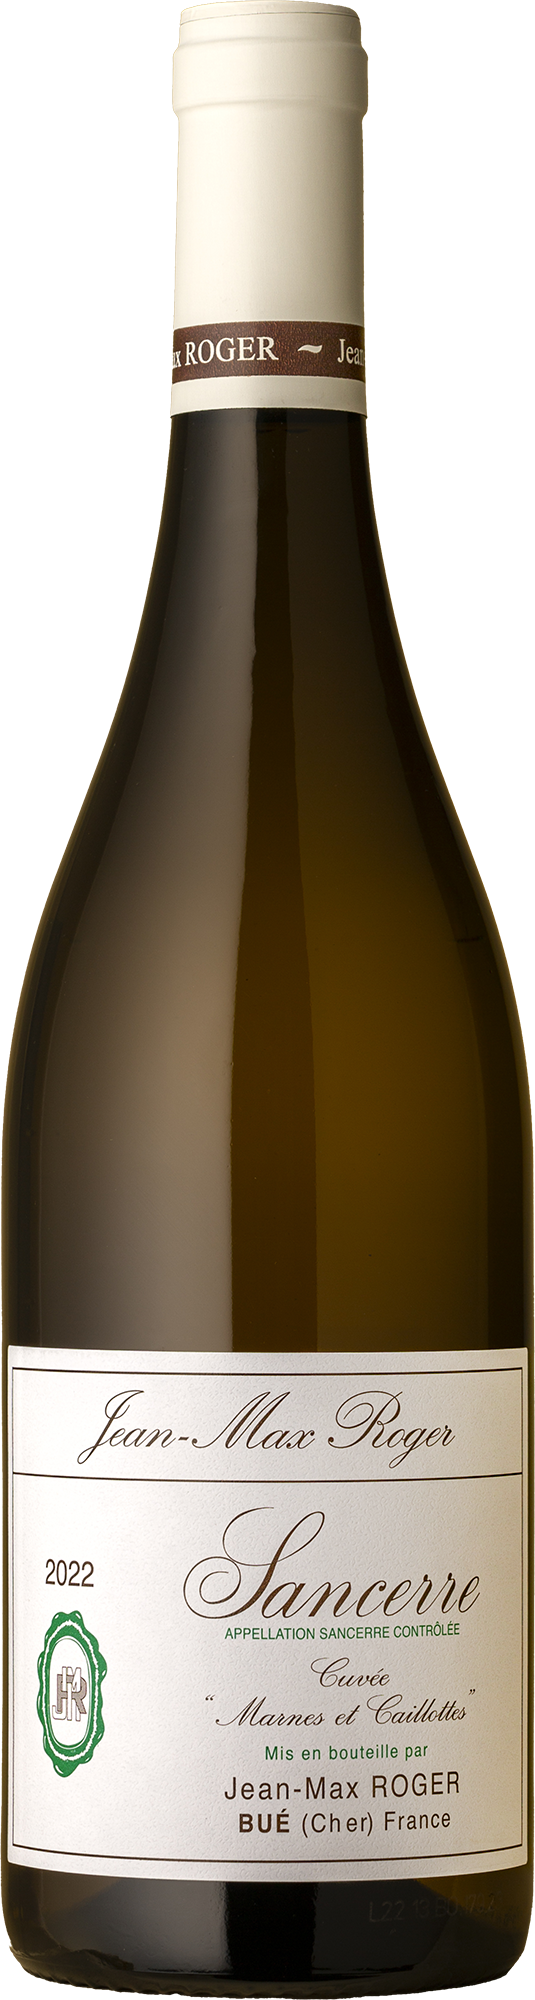 Domaine Jean Max Roger - Sancerre CMC Sauvignon Blanc 2022 White Wine